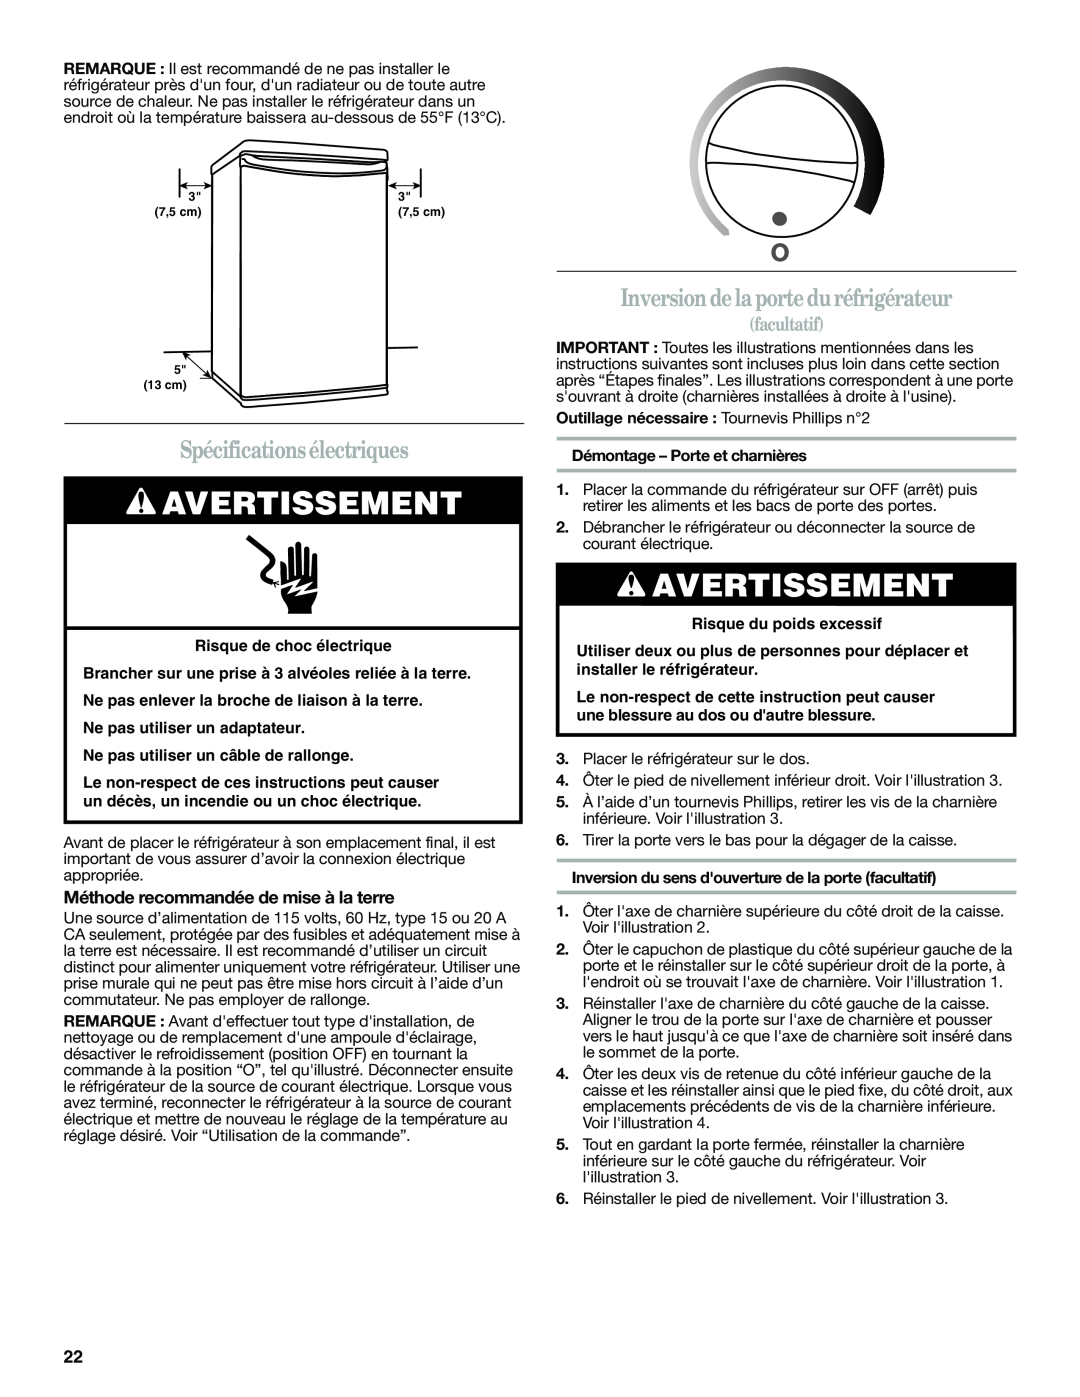 Whirlpool WAR349BSL manual Spécificationsélectriques, Inversion de la porte duréfrigérateur, facultatif, Avertissement 